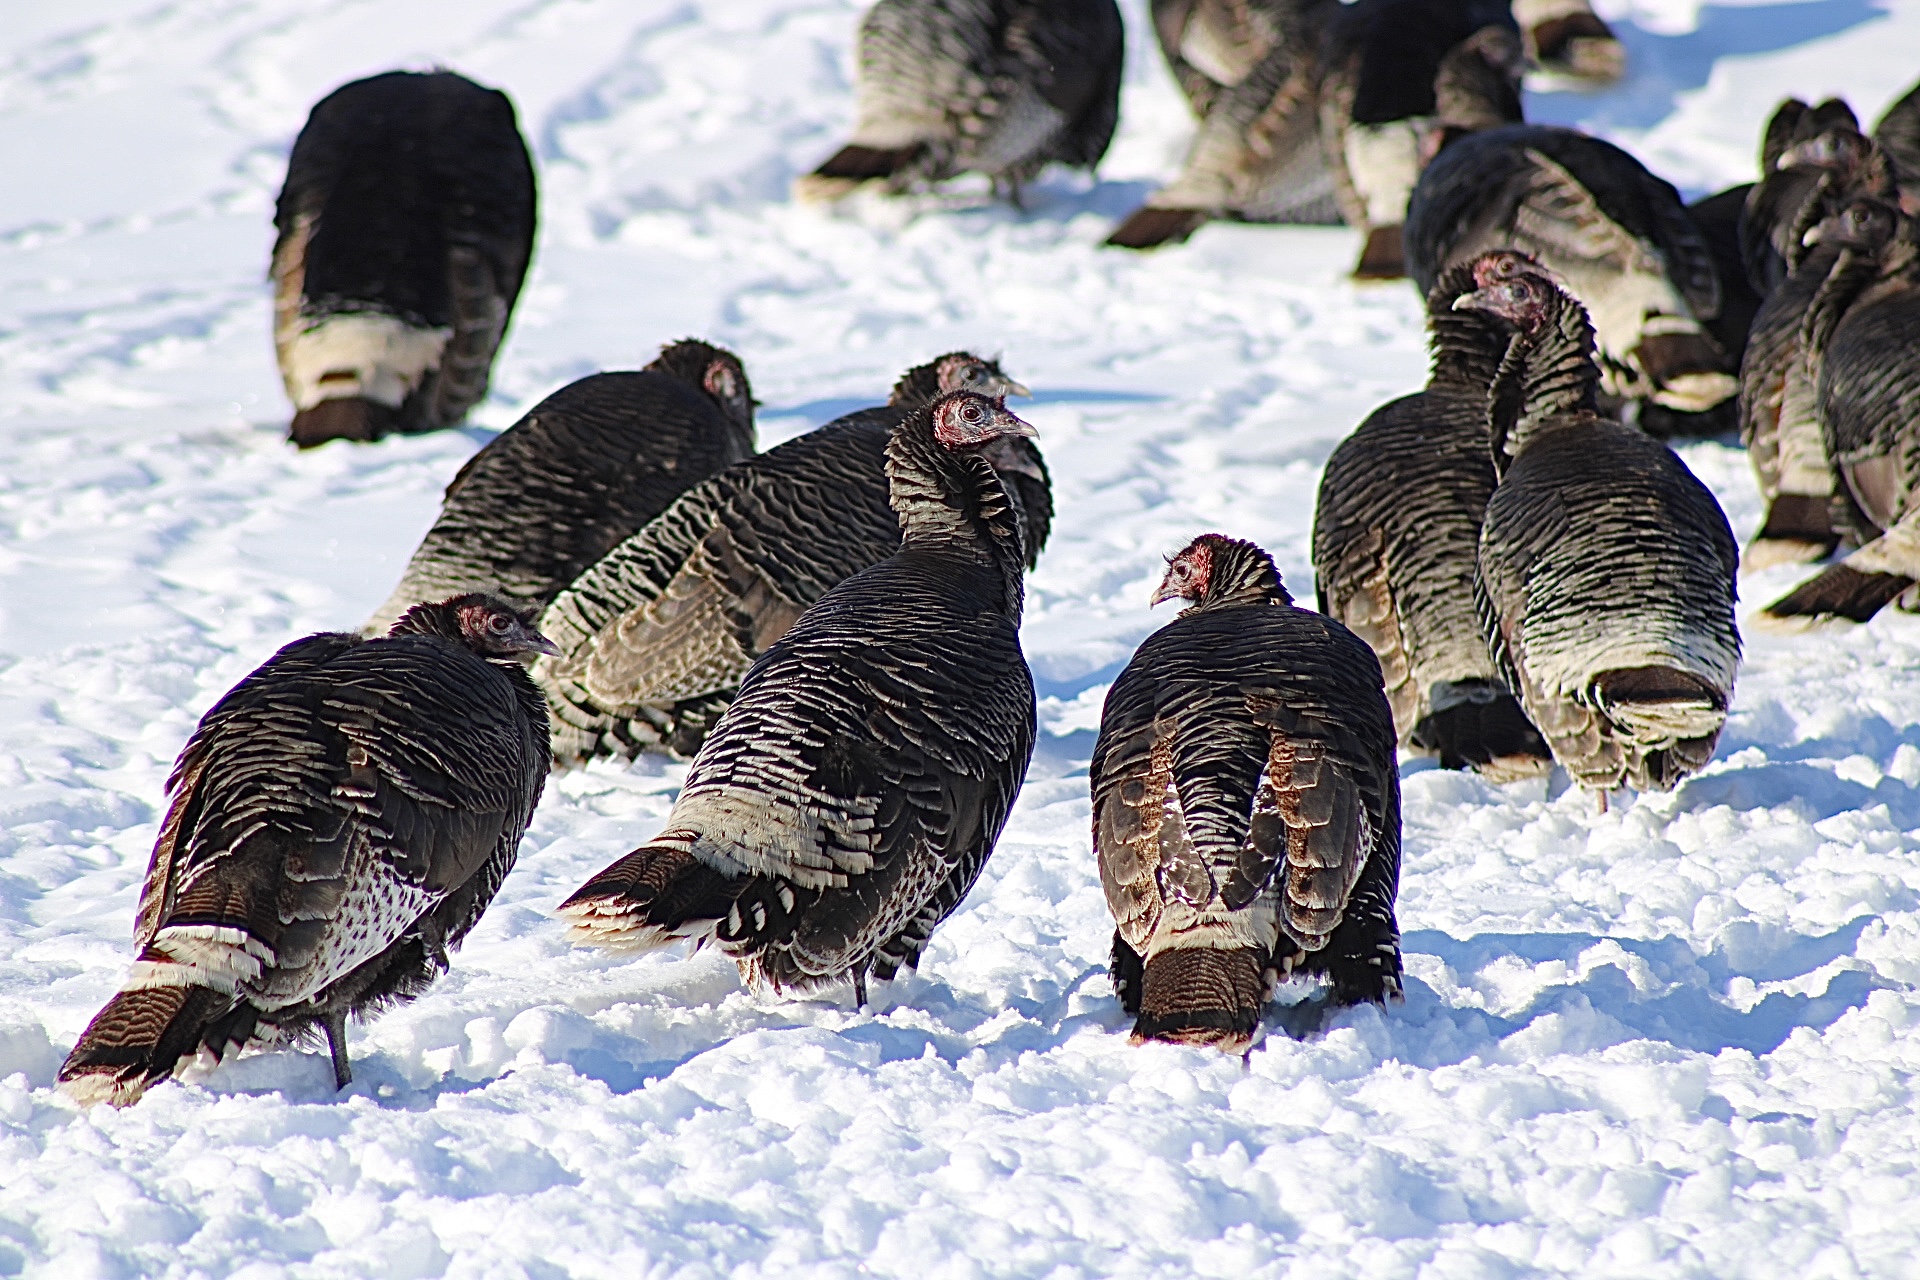 Wild turkeys gather in the snow